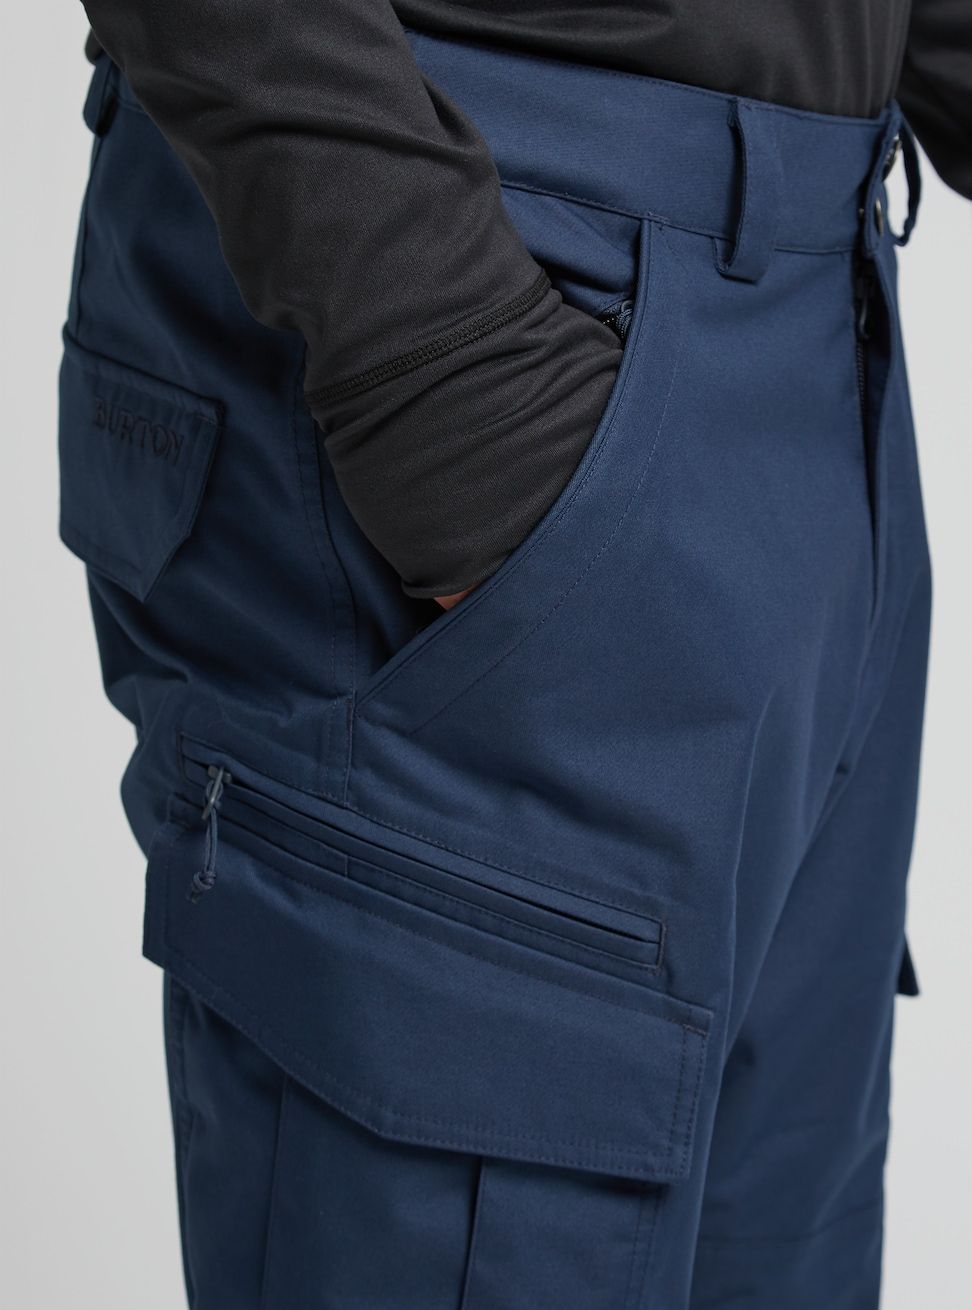 Men's Burton Cargo 2L Pants - Short Dress Blue Snow Pants